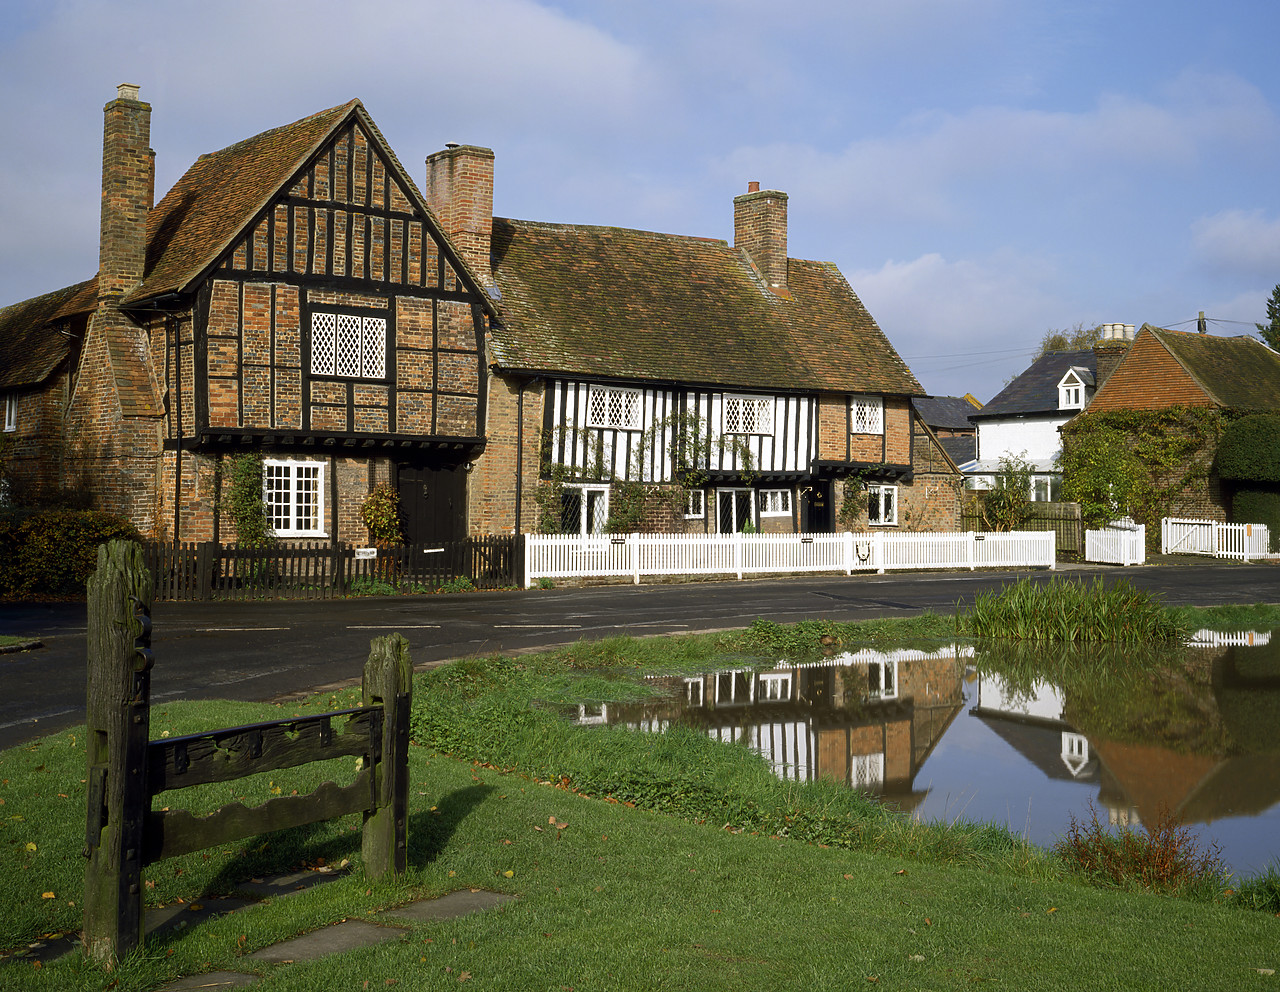 #924106-1 - Village of Aldbury, Hertfordshire, England